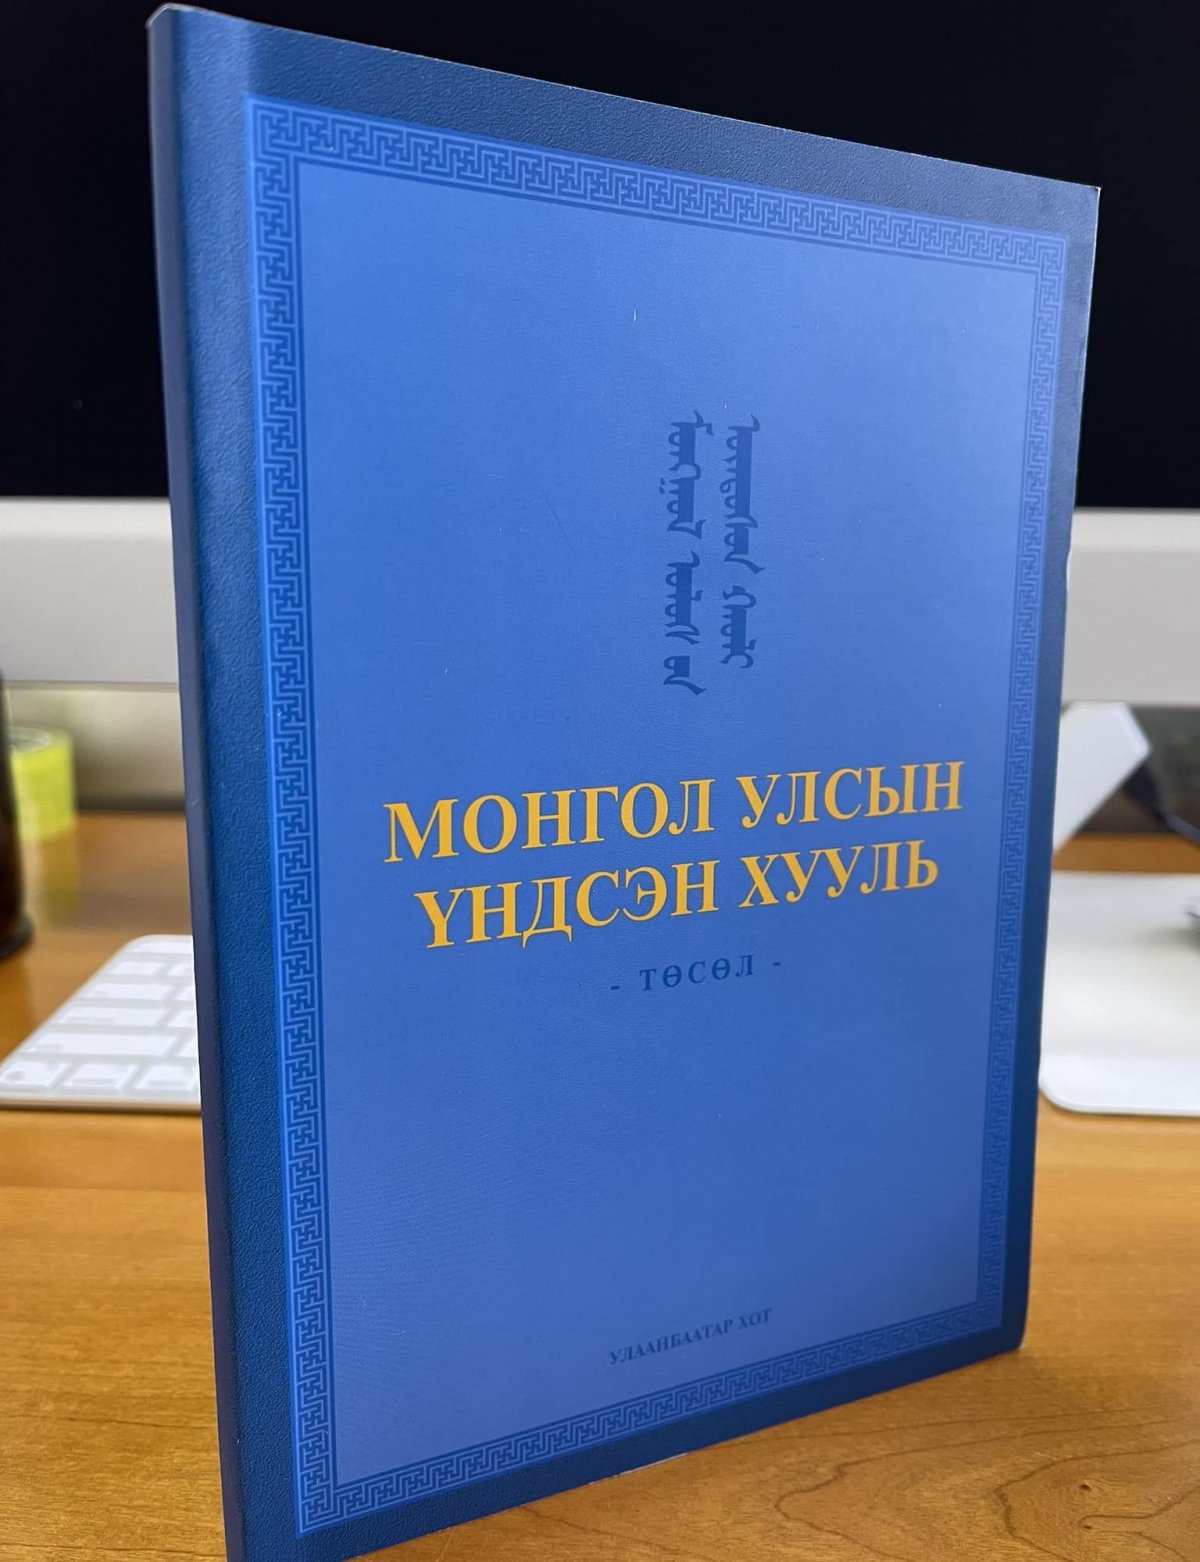 Бүгд Найрамдах Монгол Улсын Үндсэн хуулийн төслийг Ерөнхий сайдад өргөн барьжээ